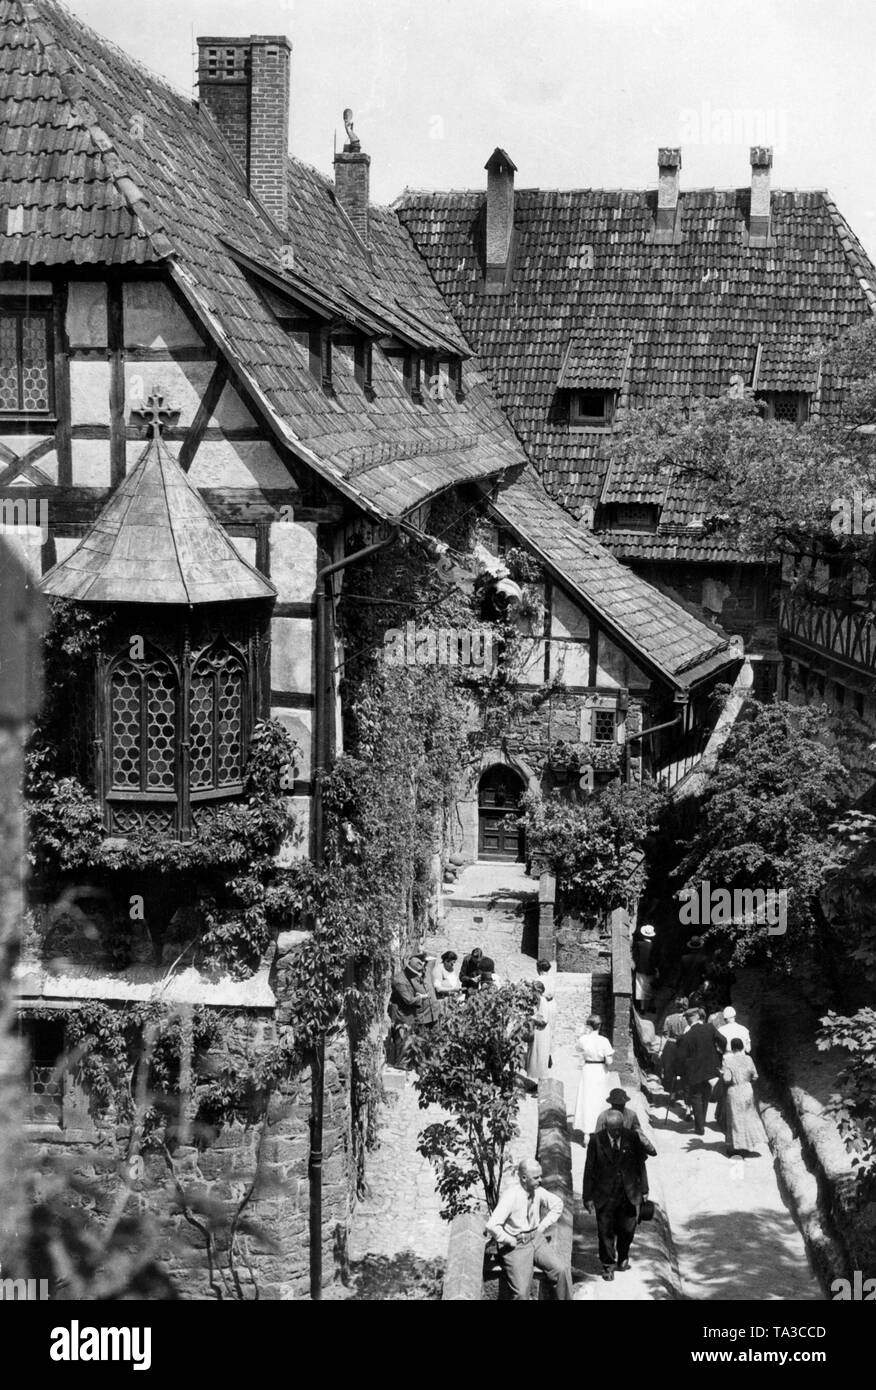 Vue sur la cour intérieure de la Wartburg sur la ville d'Eisenach, la Prusse. Ici sont présentés les envahis par les bâtiments à colombages de la cité médiévale du château de la colline. Les visiteurs marchent au premier plan. Banque D'Images